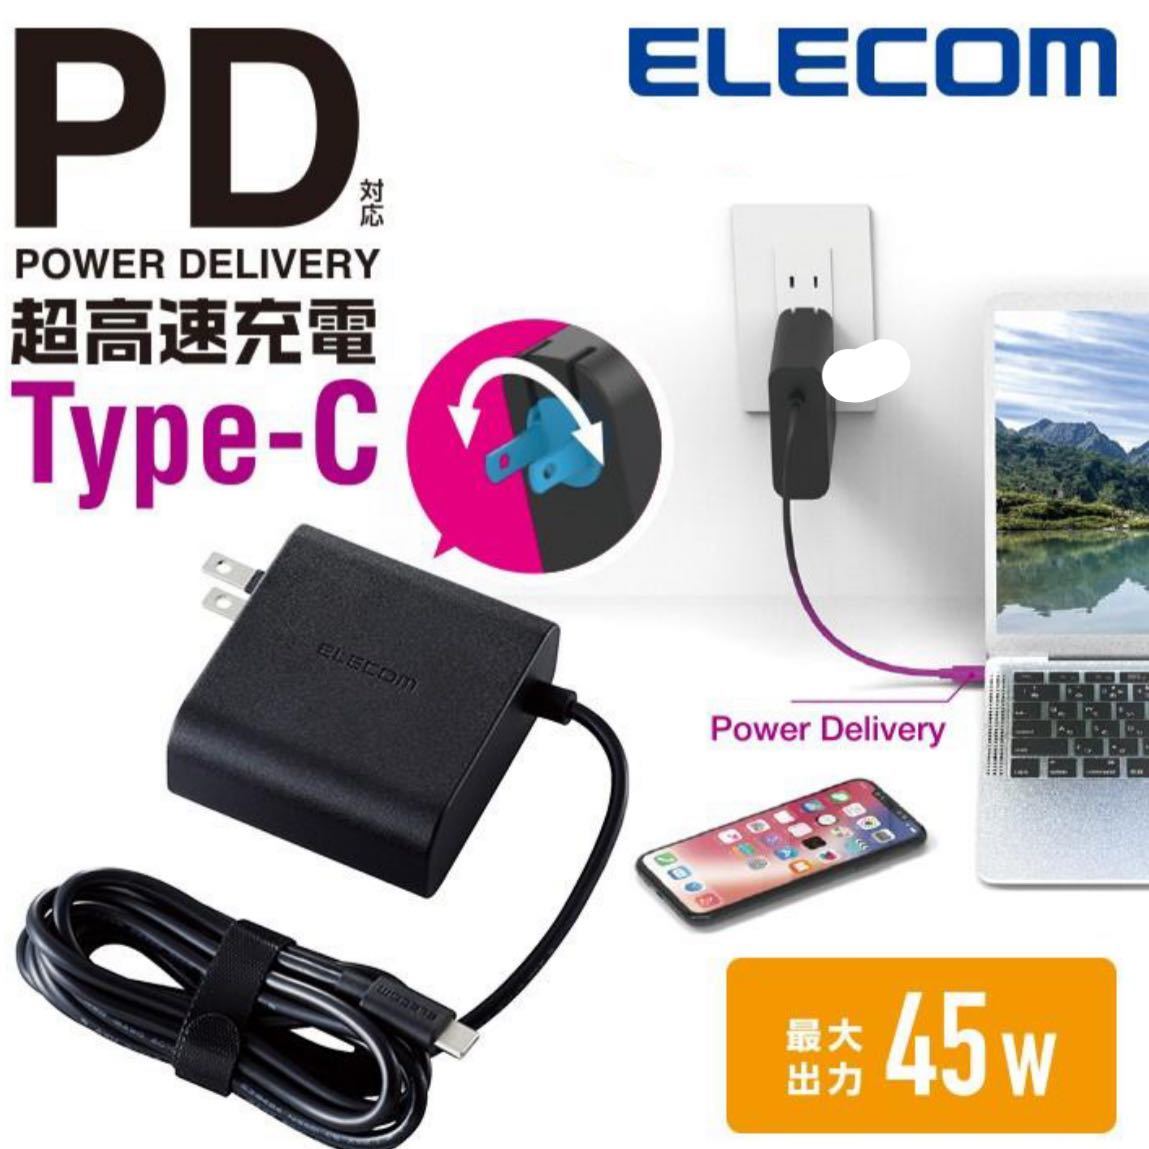 * новый товар * супер высокая скорость зарядное устройство AC адаптор 45W PD соответствует USB Type-C смартфон Note PC * Elecom ELECOM *... освобождение * единая стоимость доставки 520 иен *